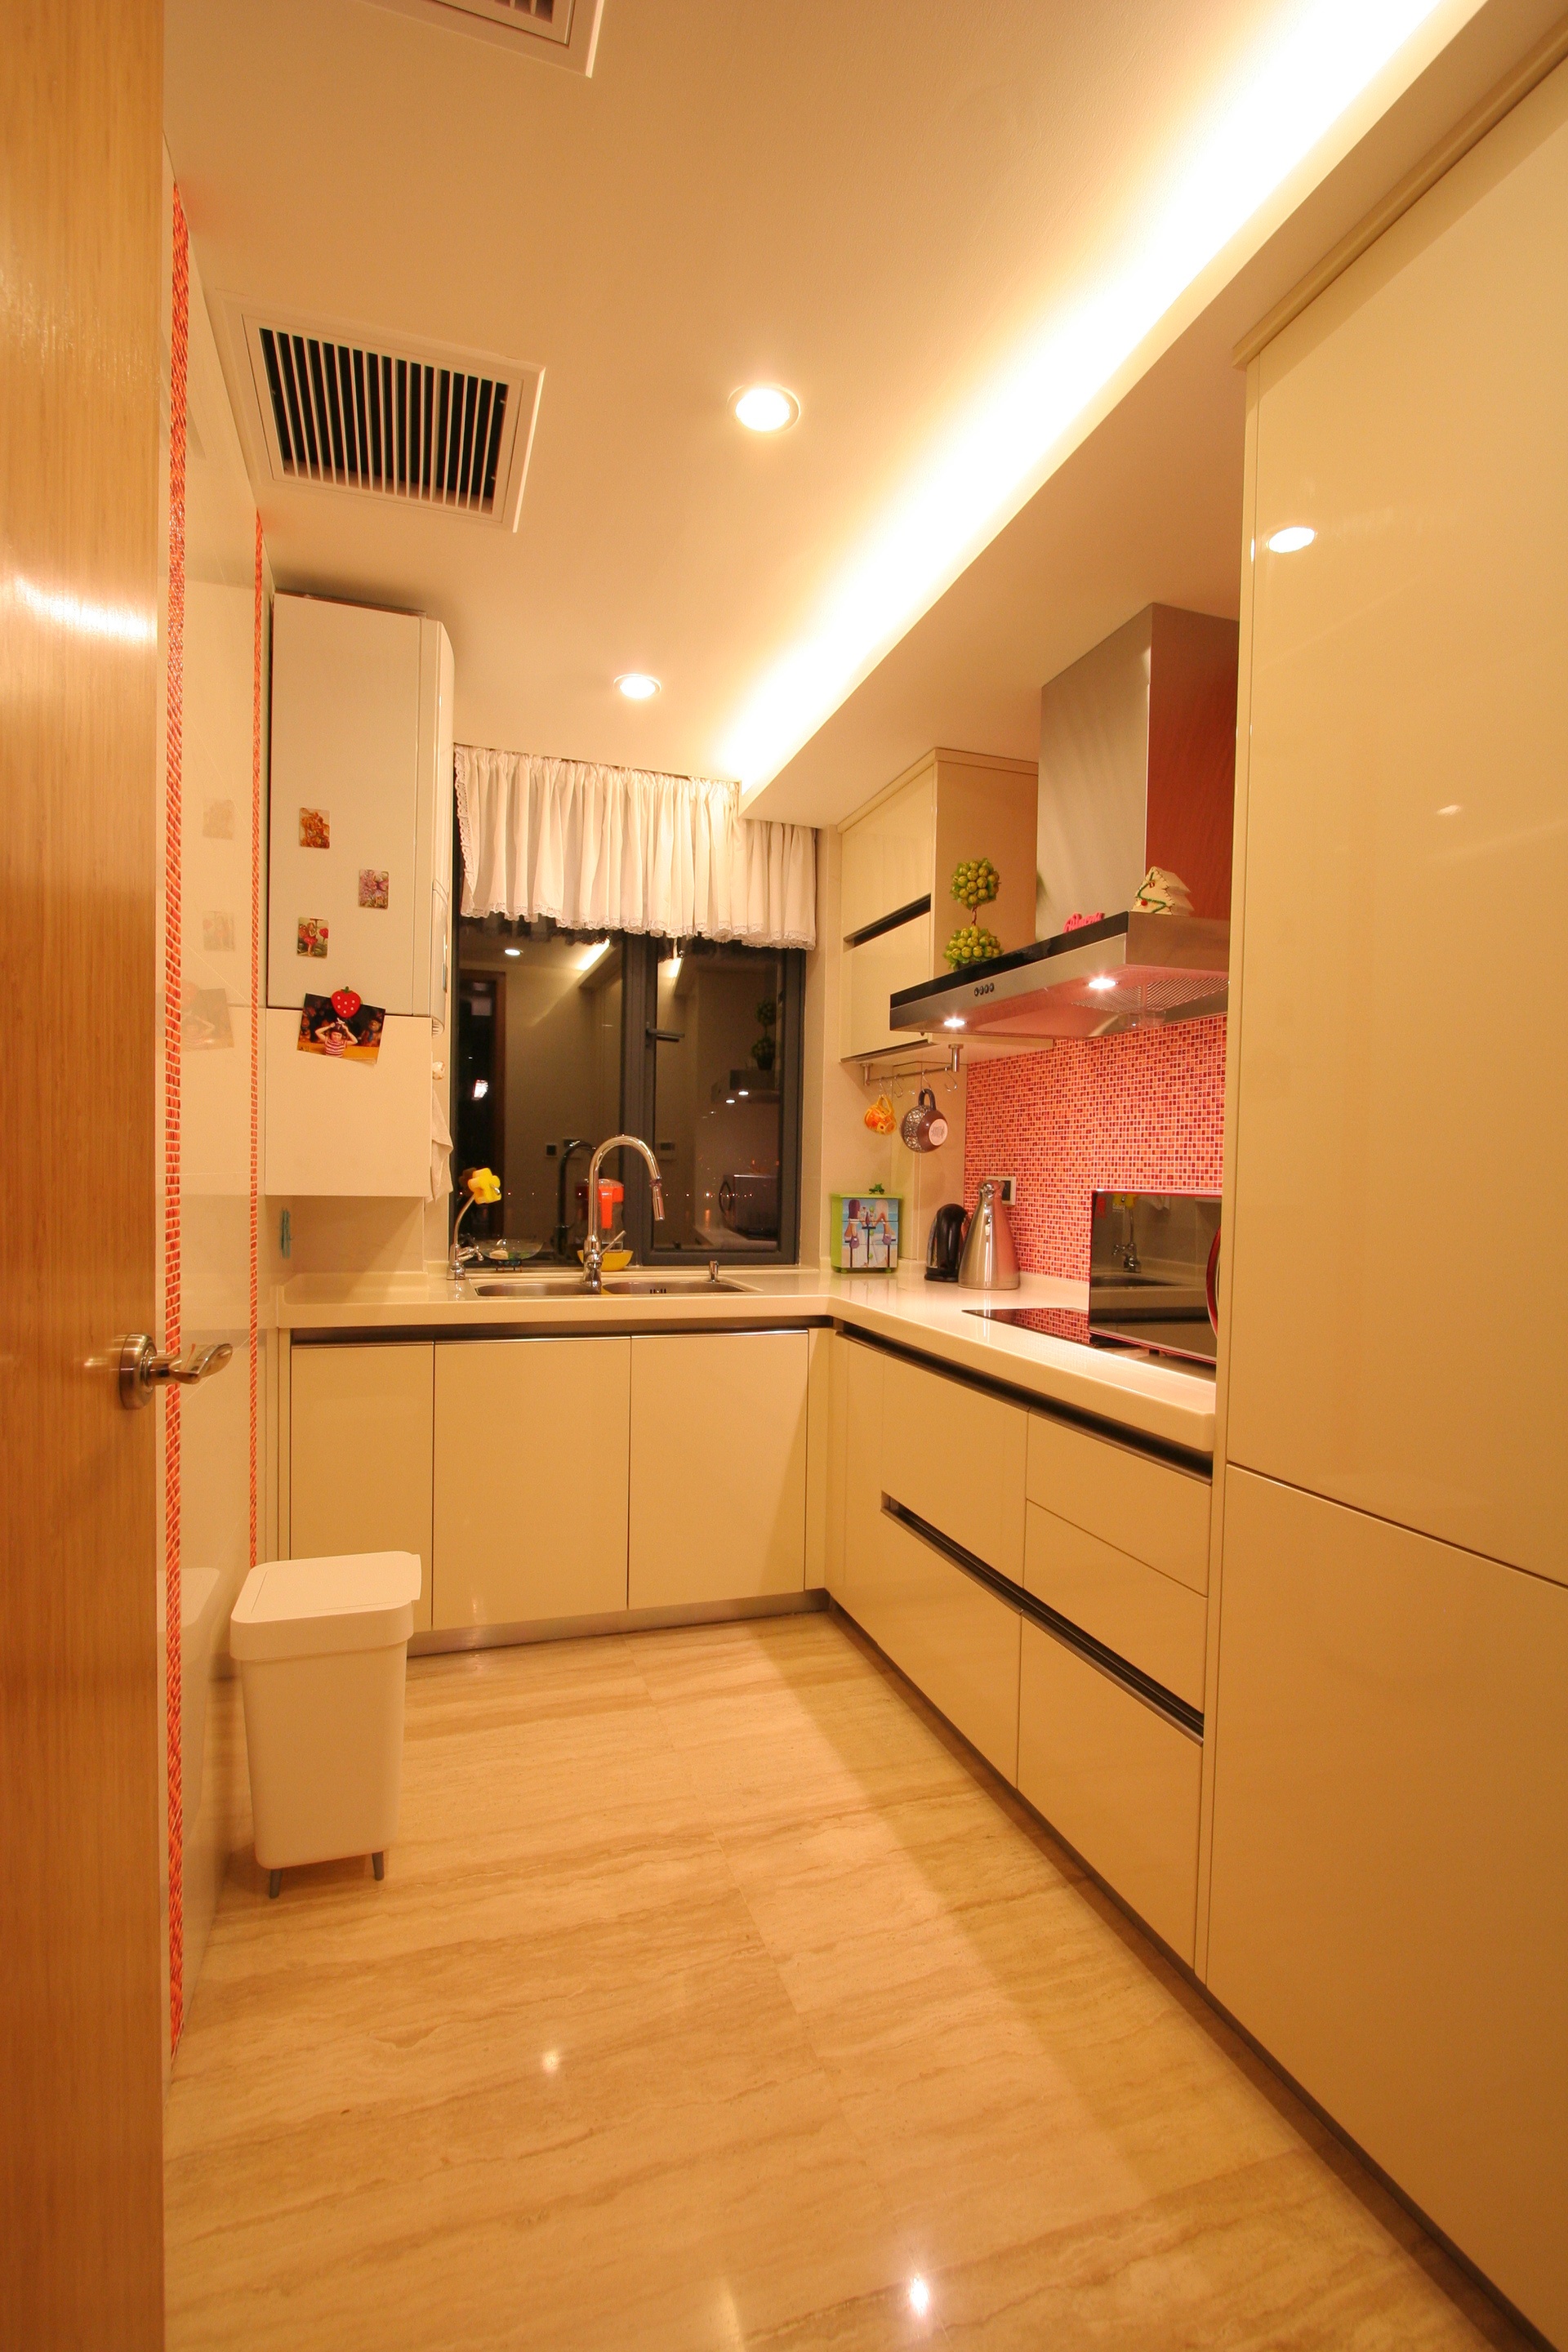 厨房墙面十分特别地以粉色的马赛克瓷砖铺饰，使得烹饪时光也格外甜蜜。